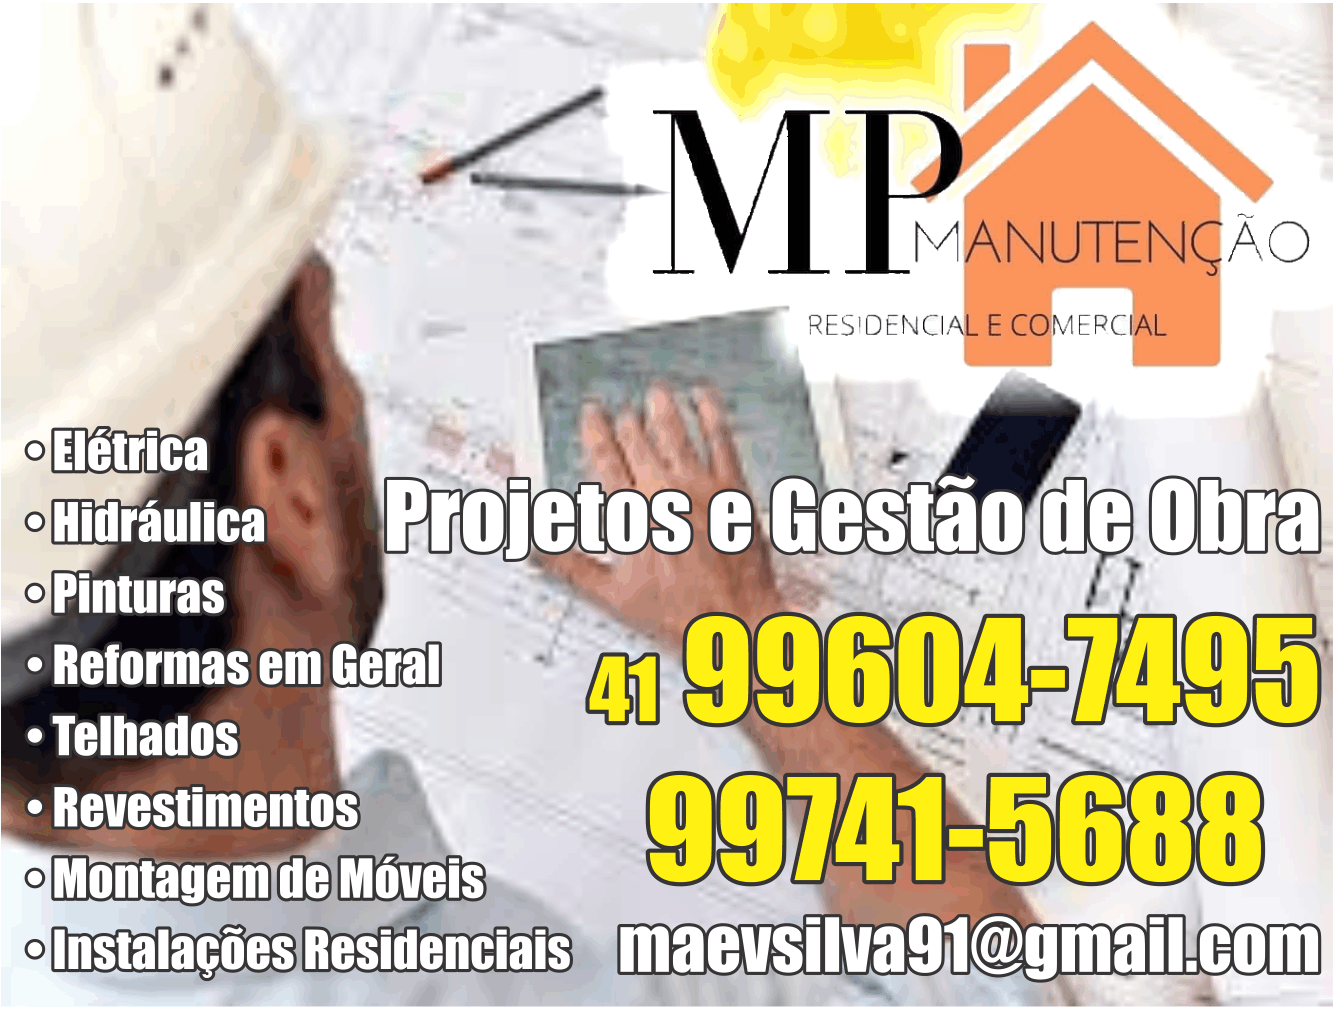 MP Manutenção Residencial e Comercial      Fones: (41)99604-7495 / (41) 99741-5688